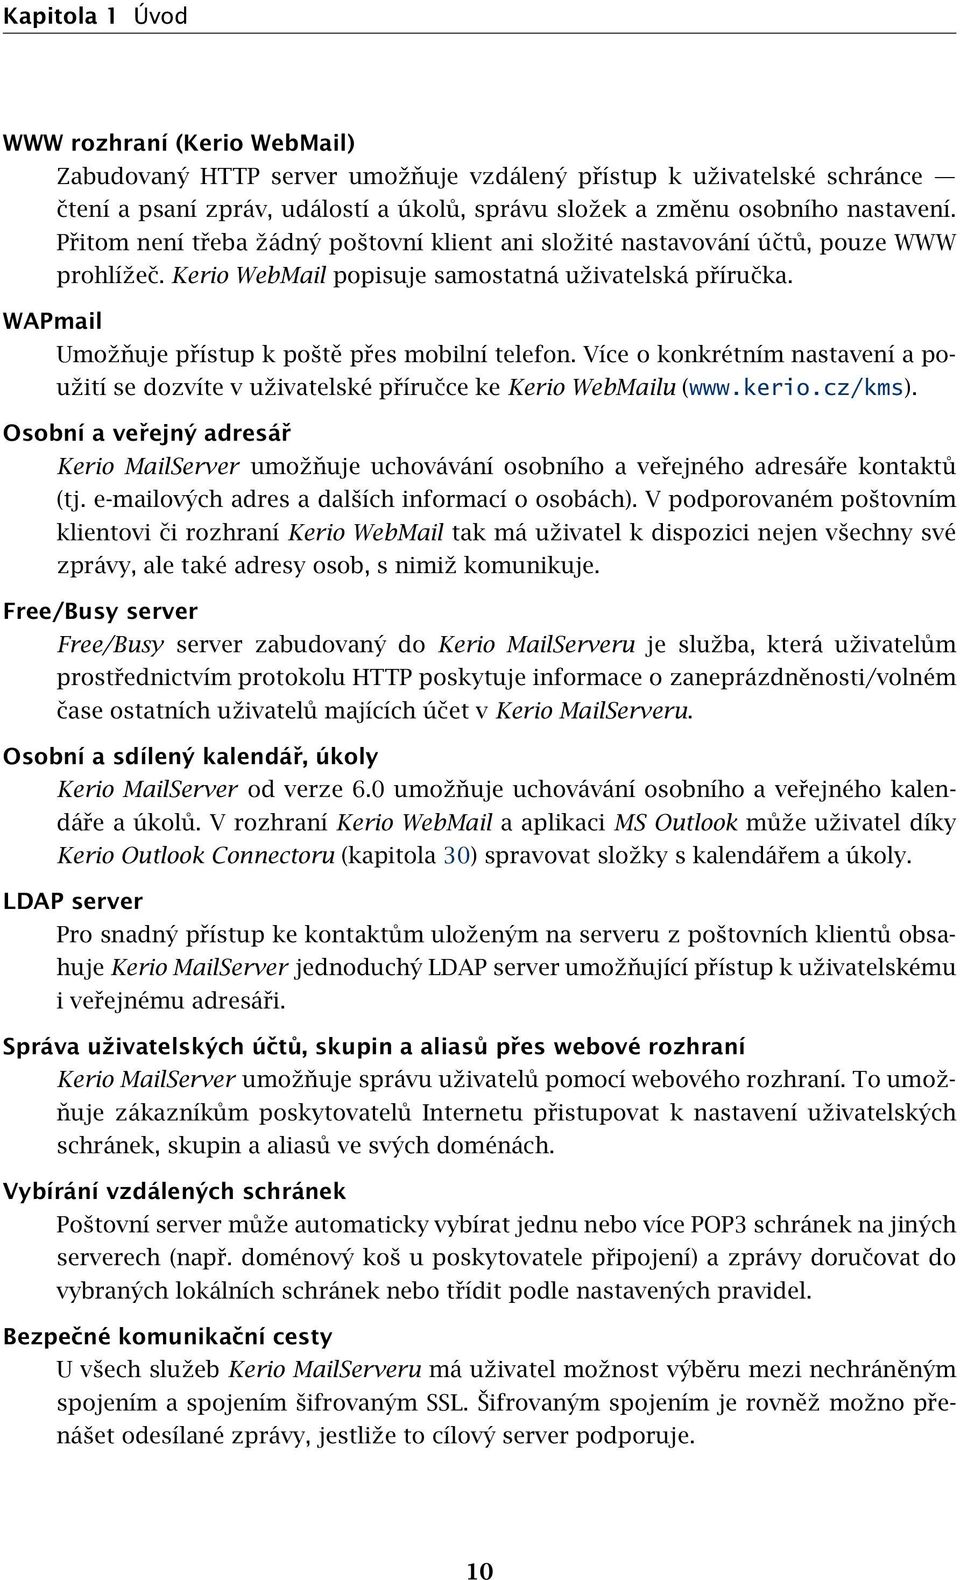 WAPmail Umožňuje přístup k poště přes mobilní telefon. Více o konkrétním nastavení a použití se dozvíte v uživatelské příručce ke Kerio WebMailu (www.kerio.cz/kms).